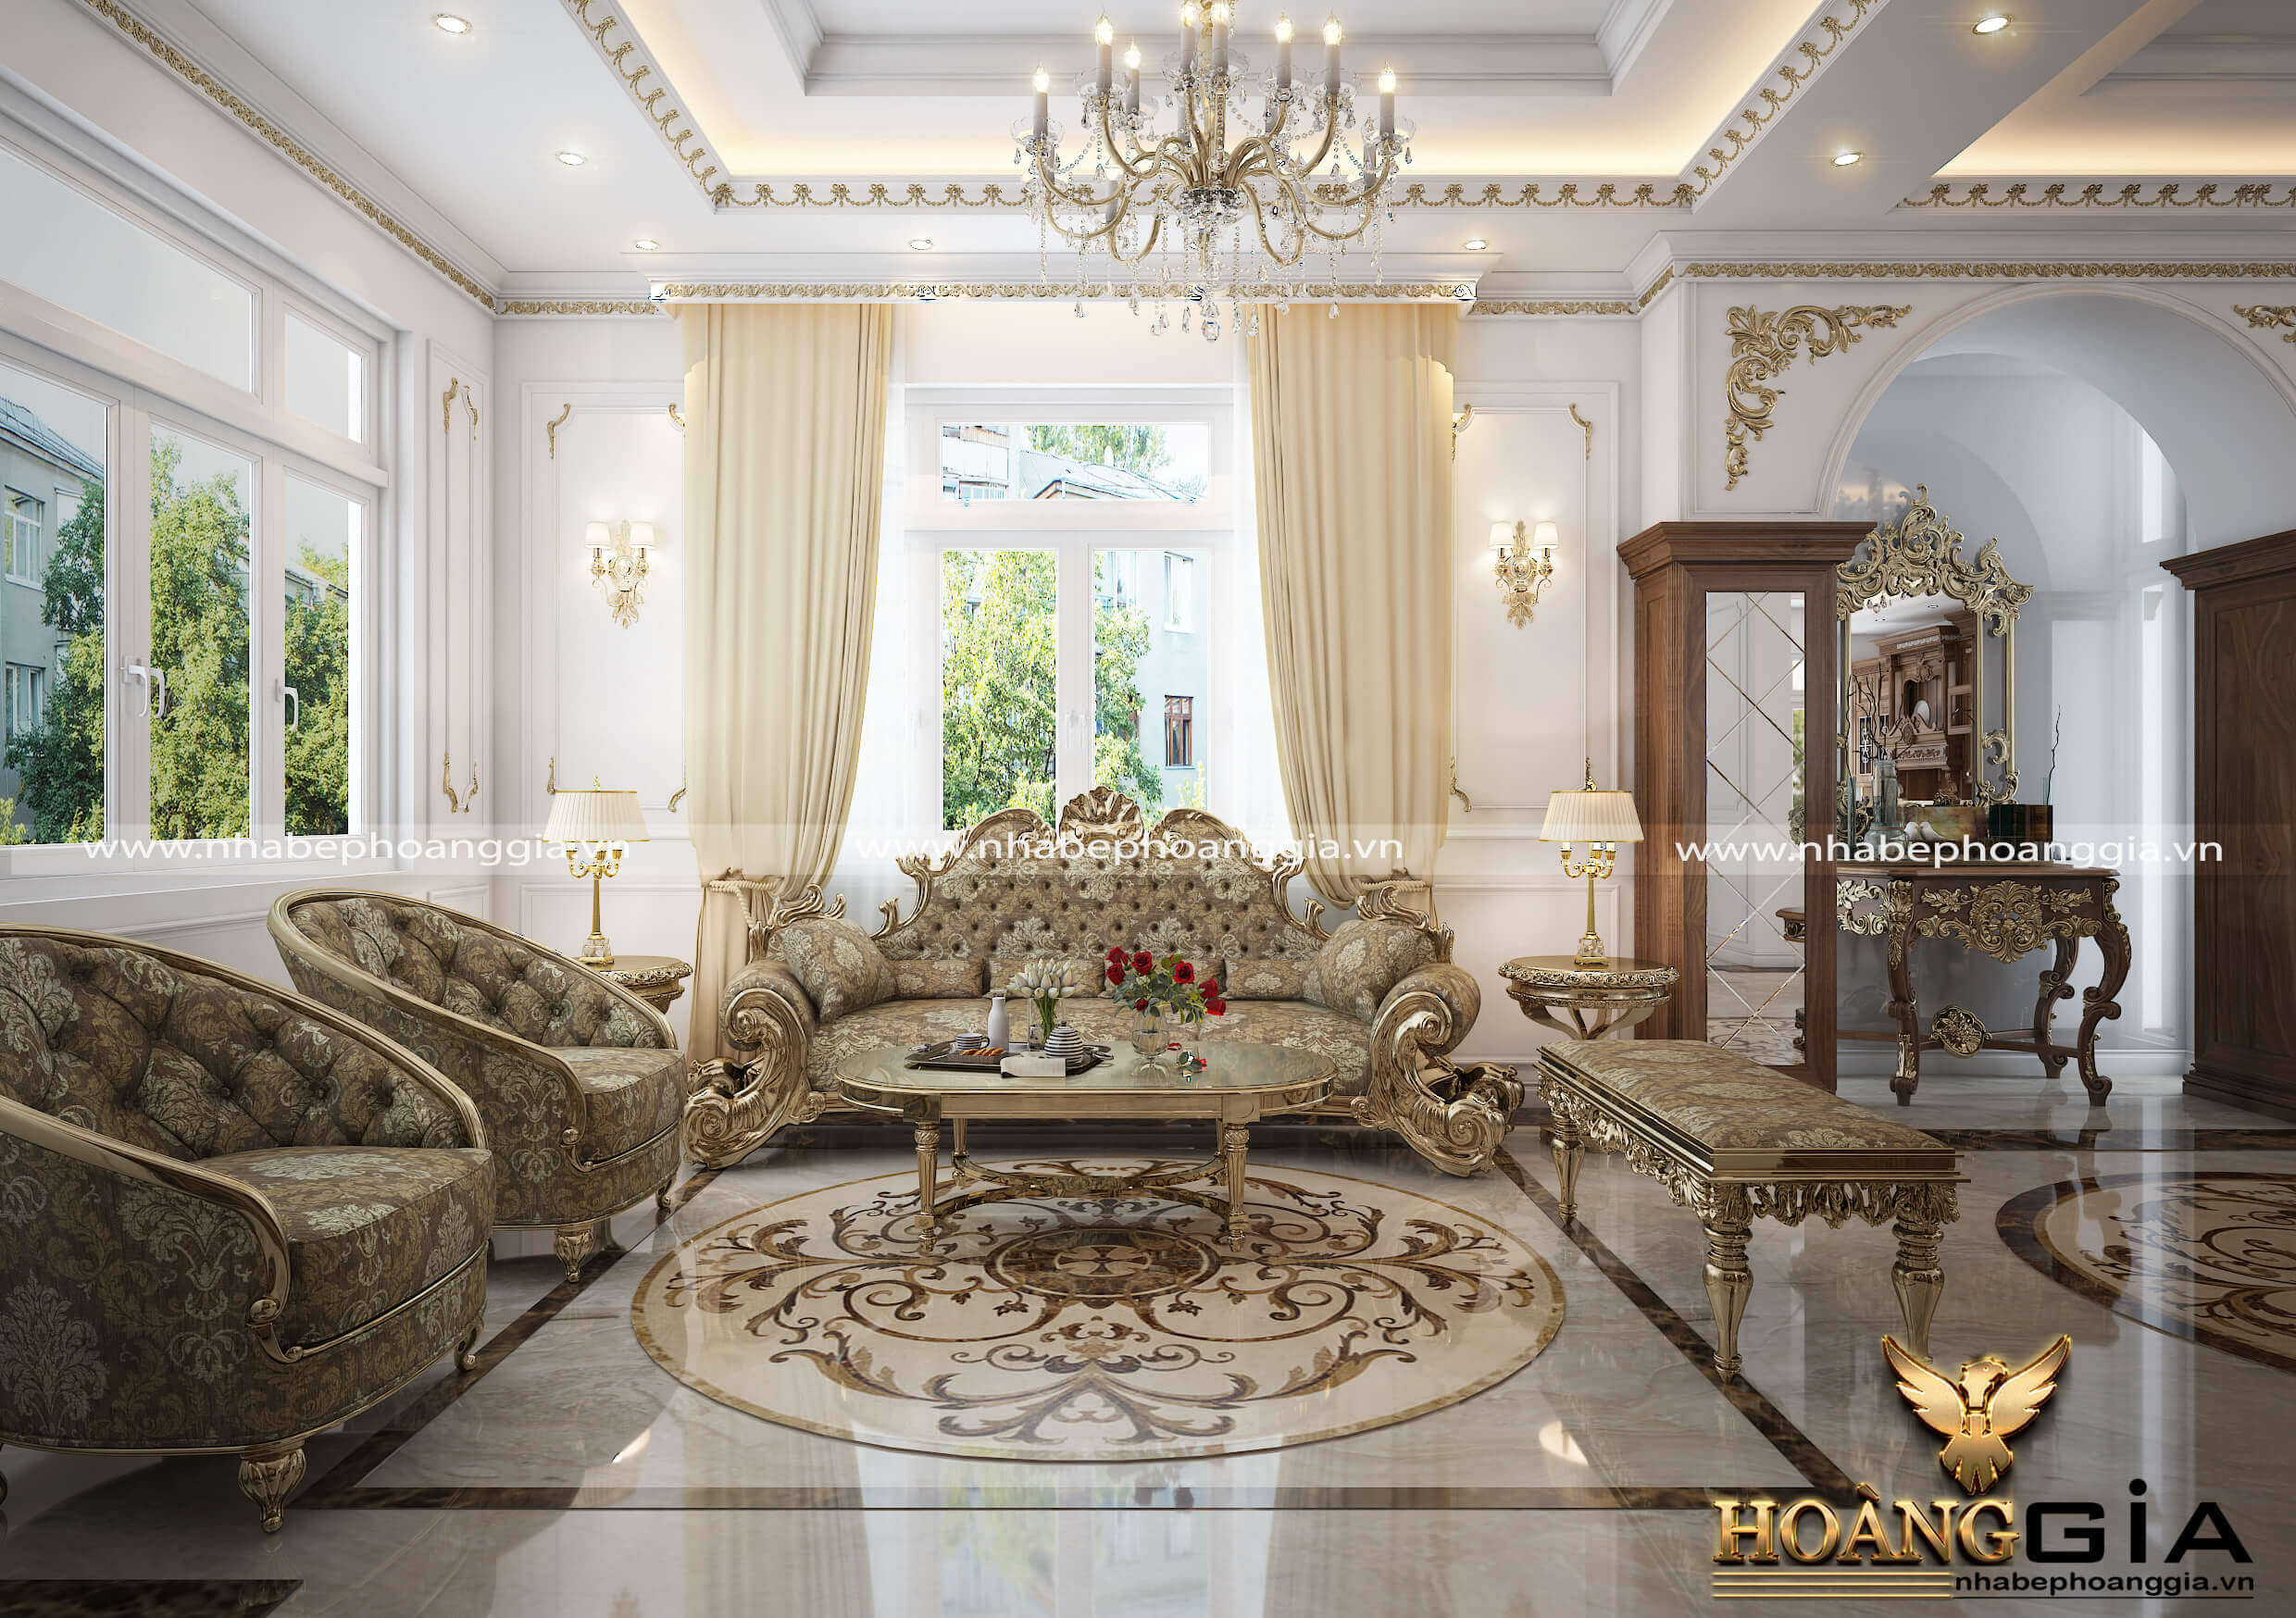 Thiết kế nội thất biệt thự sang trọng và tiện nghi  Mẫu thiết kế biệt thự  cổ điển Pháp đẹp  đẳng cấp